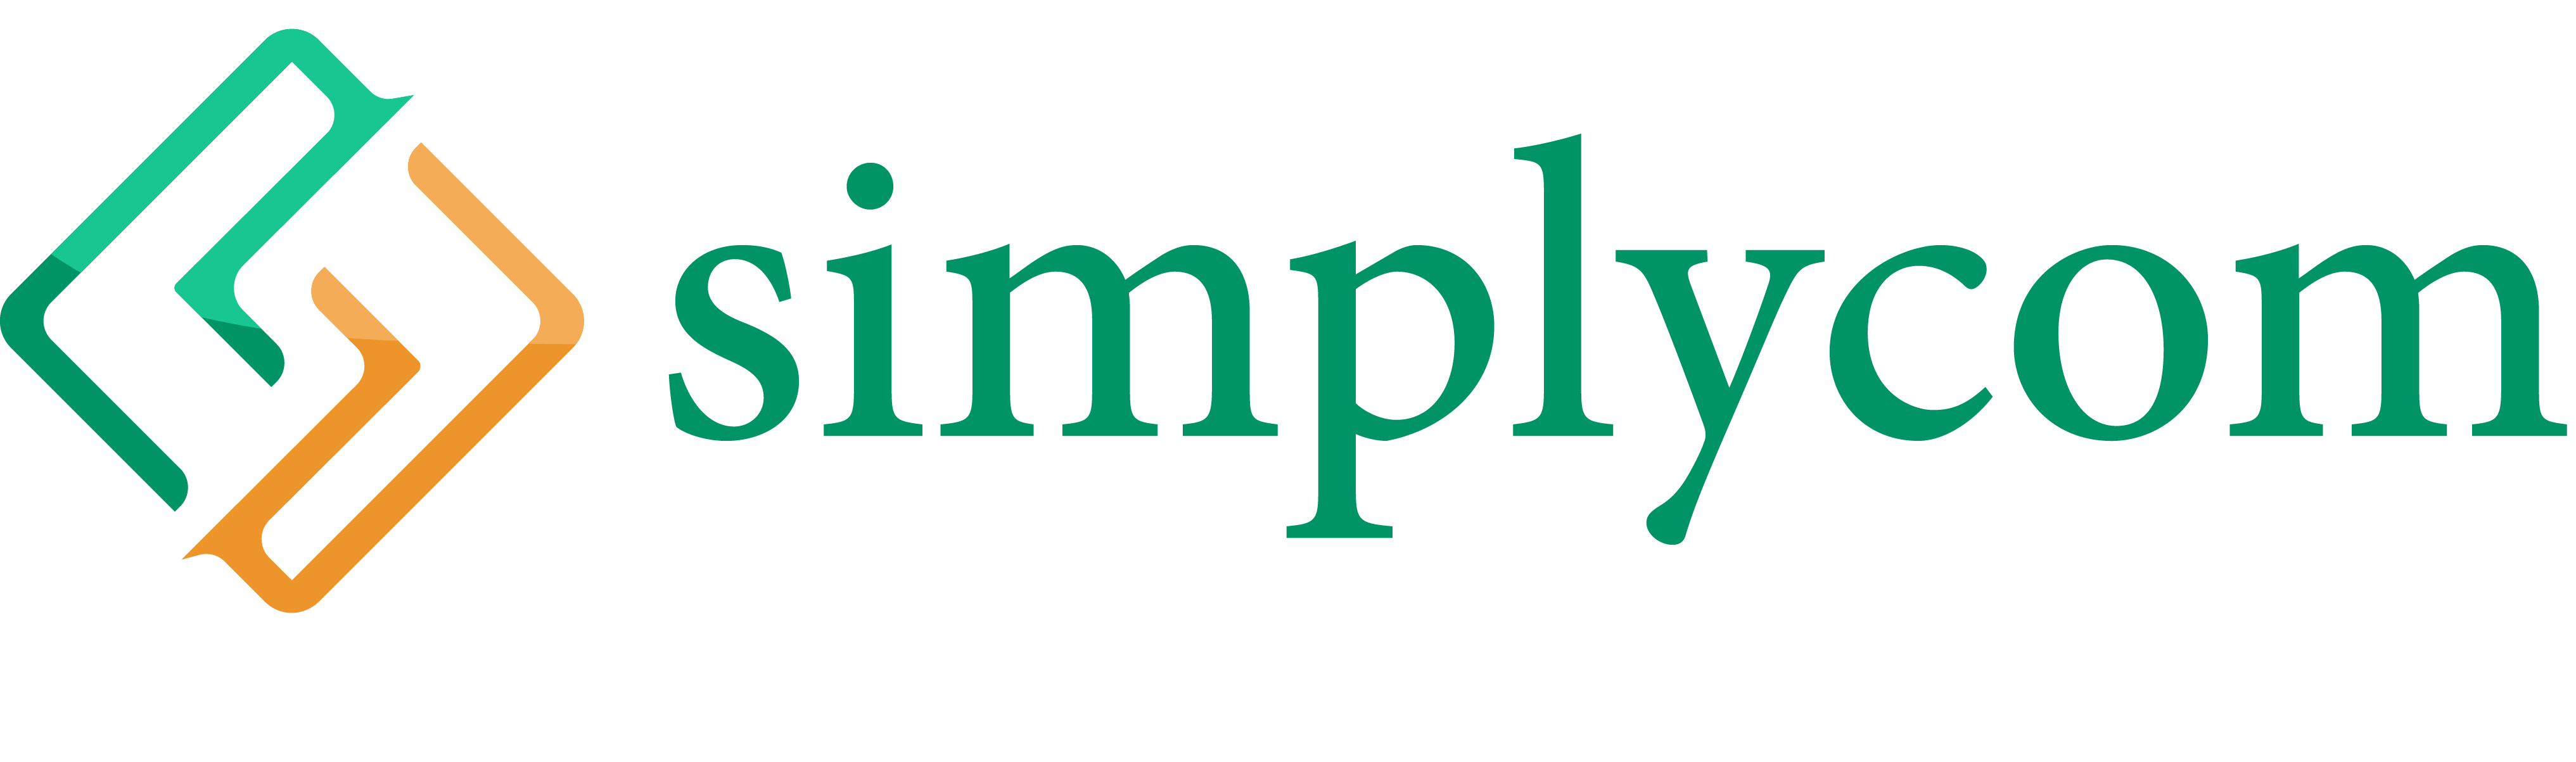 Simplycom